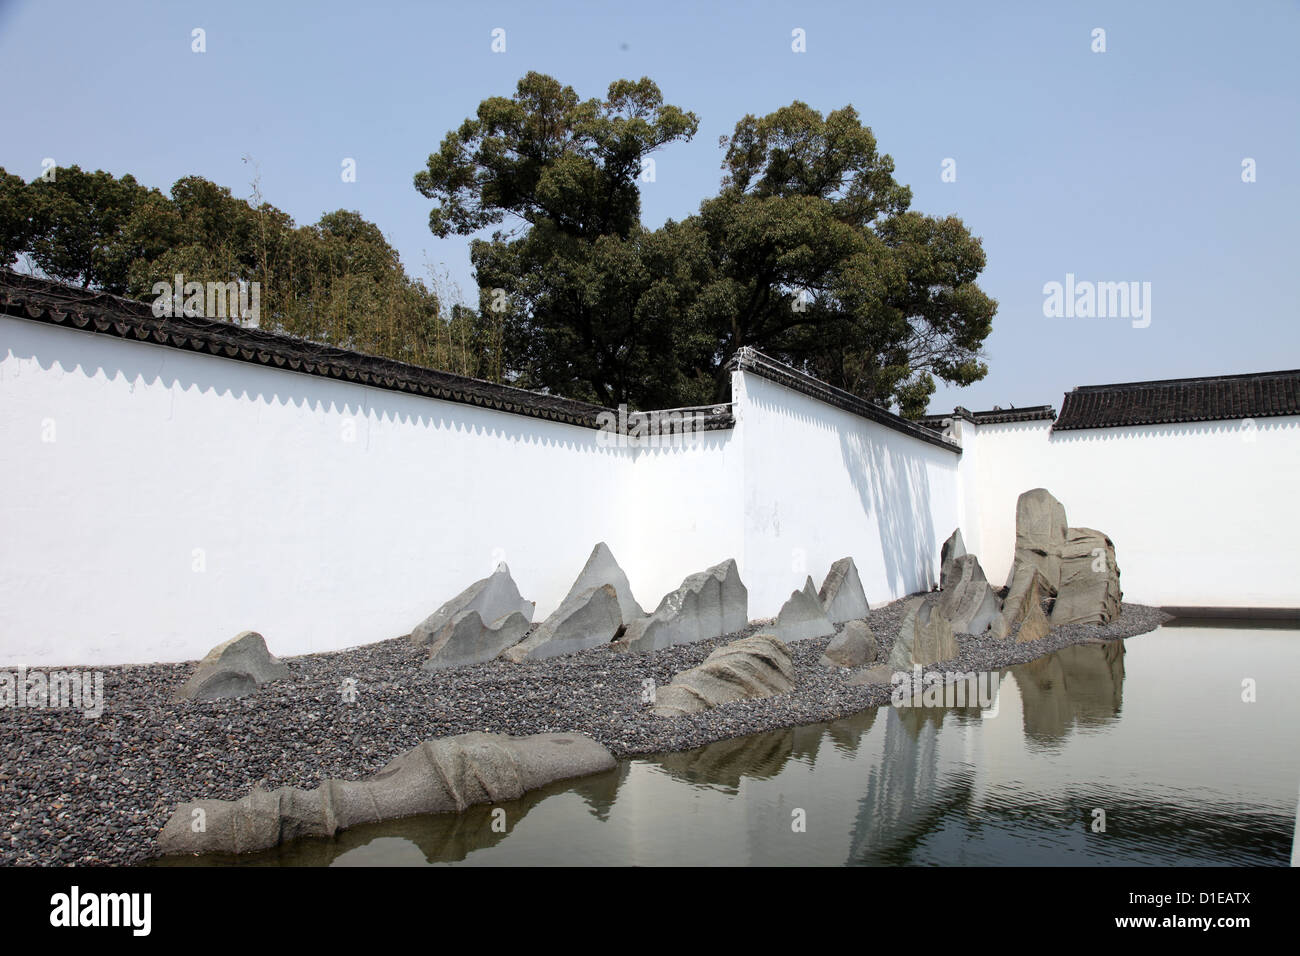 Una foto di un giardino all'interno di un cortile di un tempio Cinese. Si tratta di zen, tranquilla e calma. Vediamo alberi, acqua, muro bianco e rocce Foto Stock